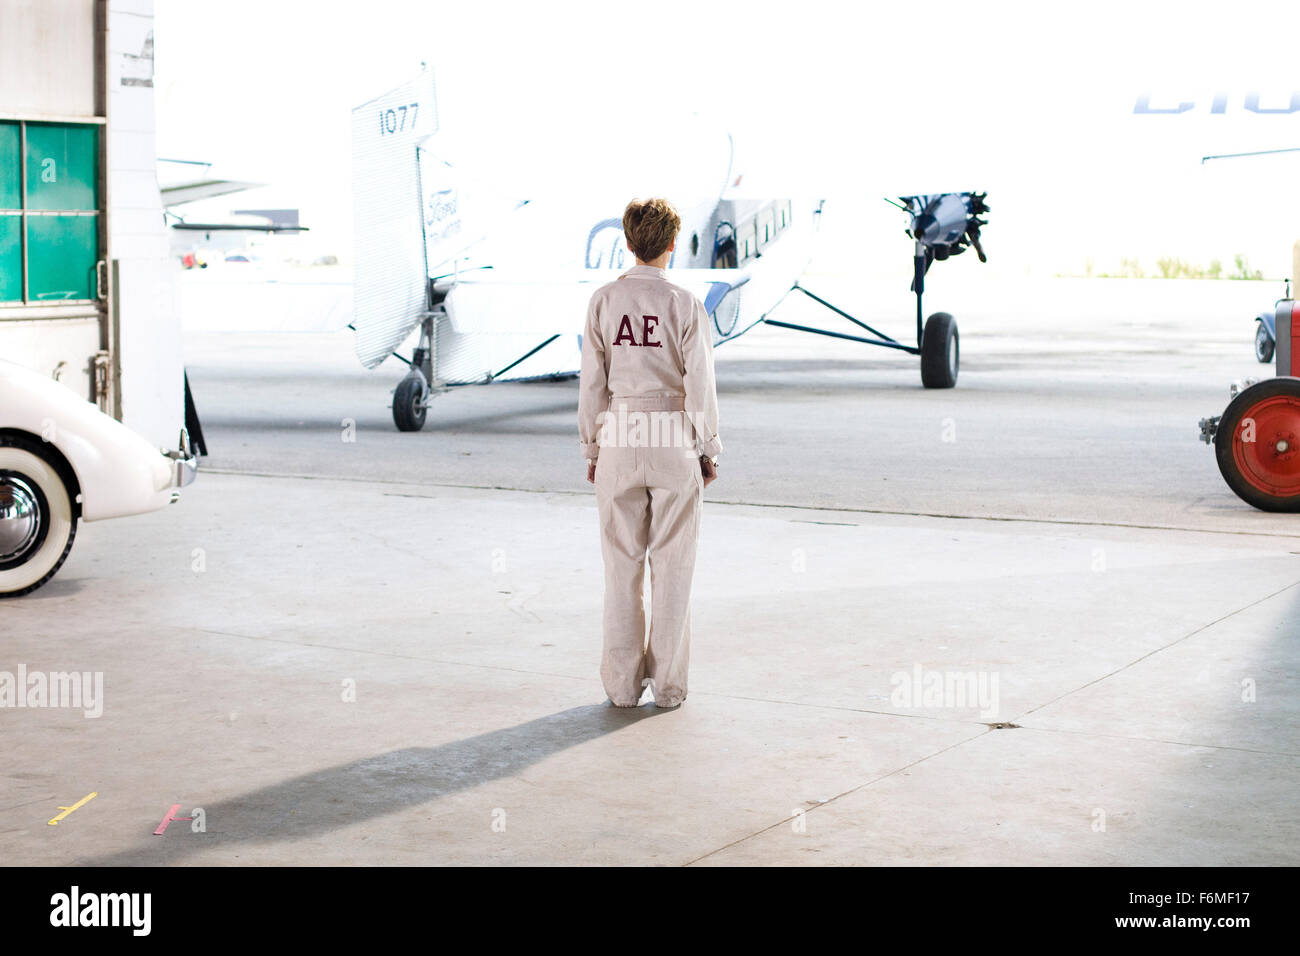 Erscheinungsdatum: 23. Oktober 2009. FILMTITEL: Amelia. STUDIO: Avalon Bilder. PLOT: Amelia Earhart, ein Mädchen Kansas entdeckt, der Nervenkitzel der Luftfahrt im Alter von 23 und innerhalb von 12 Jahren fortgeschritten ist, um zu gewinnen das Distinguished Flying Cross für die erste Frau Solo ein Flugzeug über den Atlantik zu steuern. Im Alter von 39 Jahren begibt sie sich auf einem Versuch, die Welt, ein Abenteuer zu umrunden, die ihr in Luftfahrt Mythos katapultiert. Im Bild: HILARY SWANK als Amelia Earhart. Stockfoto